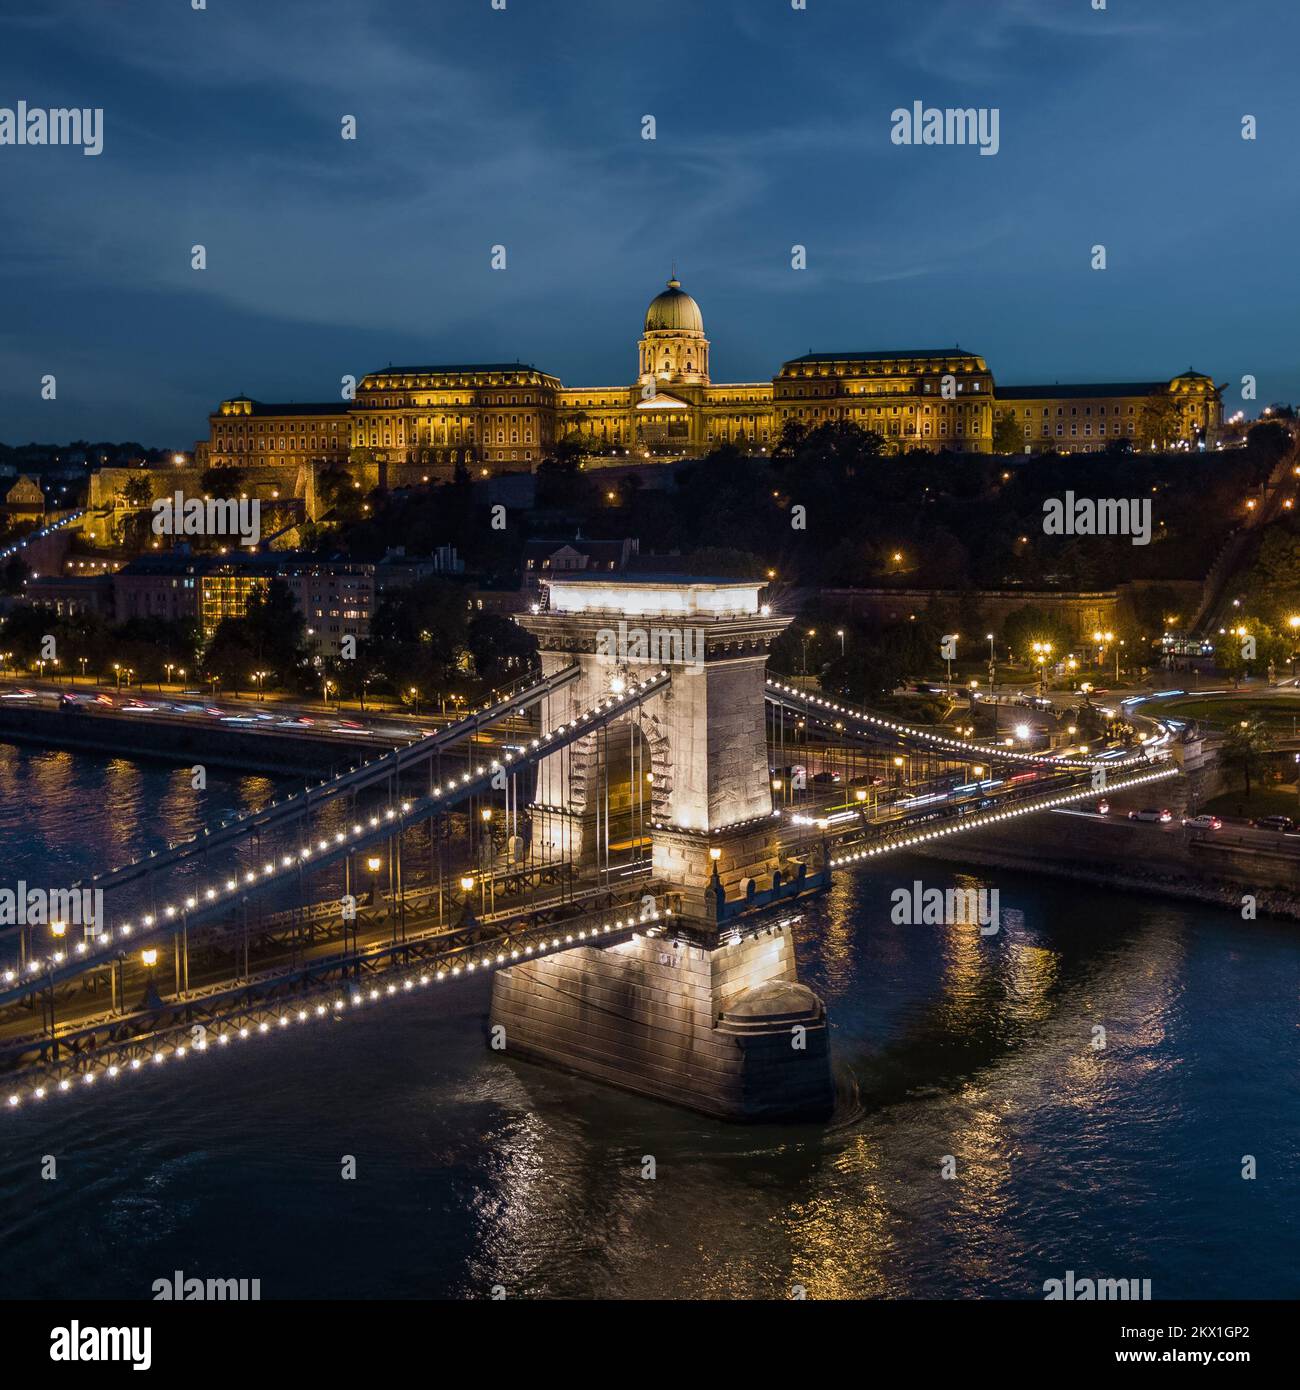 Vista aérea del Palacio Buda y el Puente de las Cadenas Szechenyi sobre el río Danubio al anochecer en Budapest, Hungría. Foto de stock